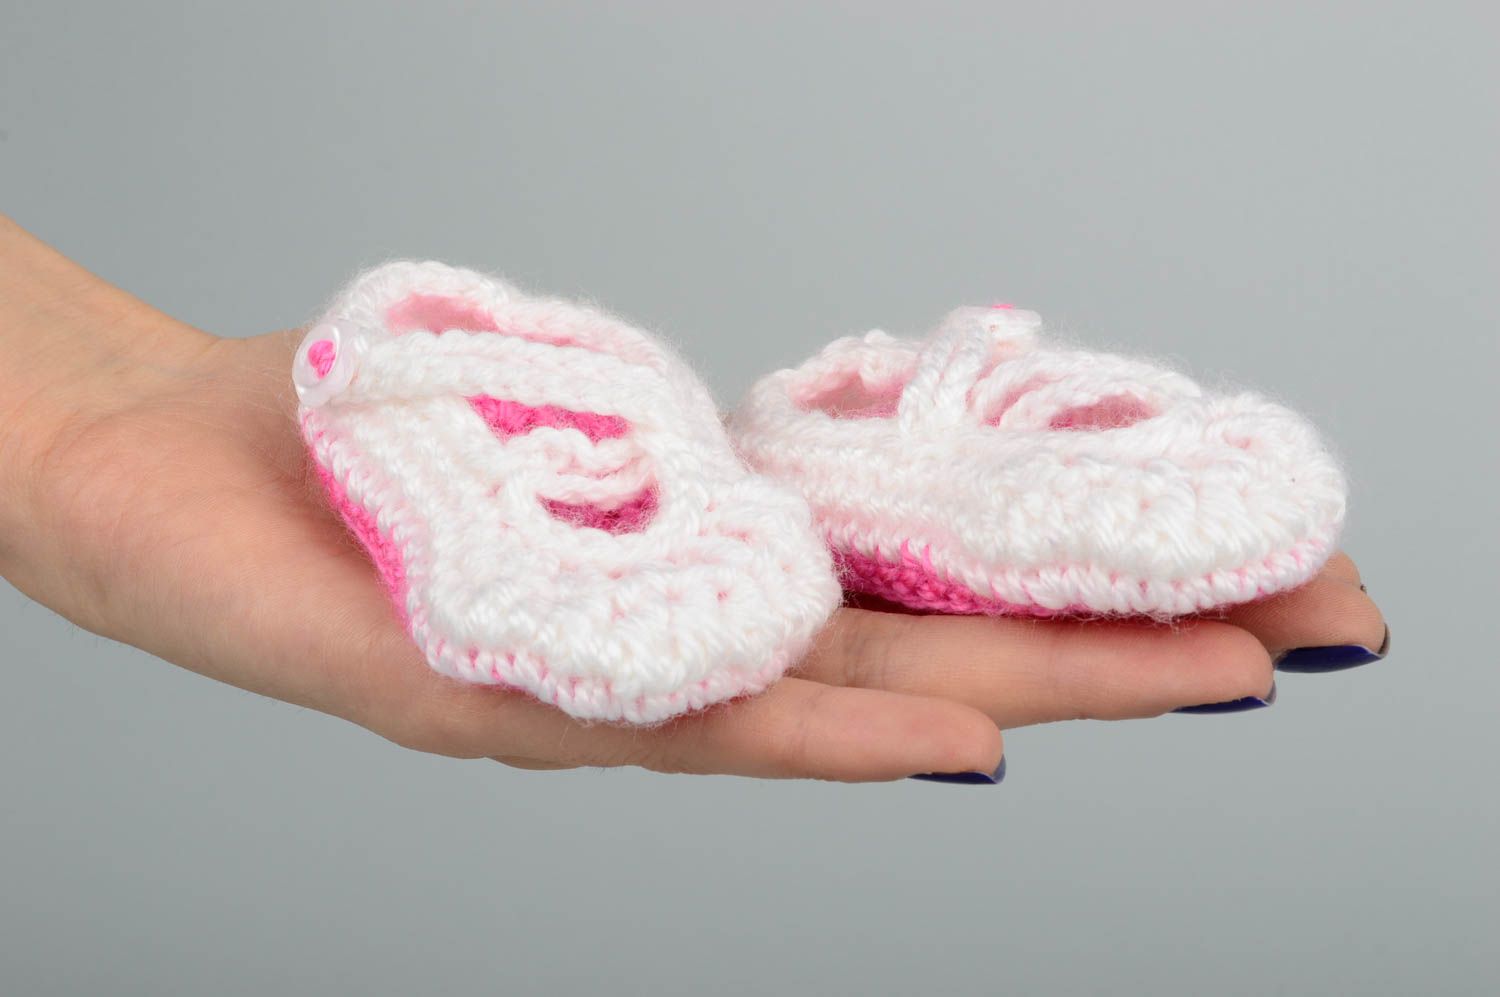 Chaussons bébé faits main Chaussures bébé au crochet blanc rose Vêtement bébé photo 2